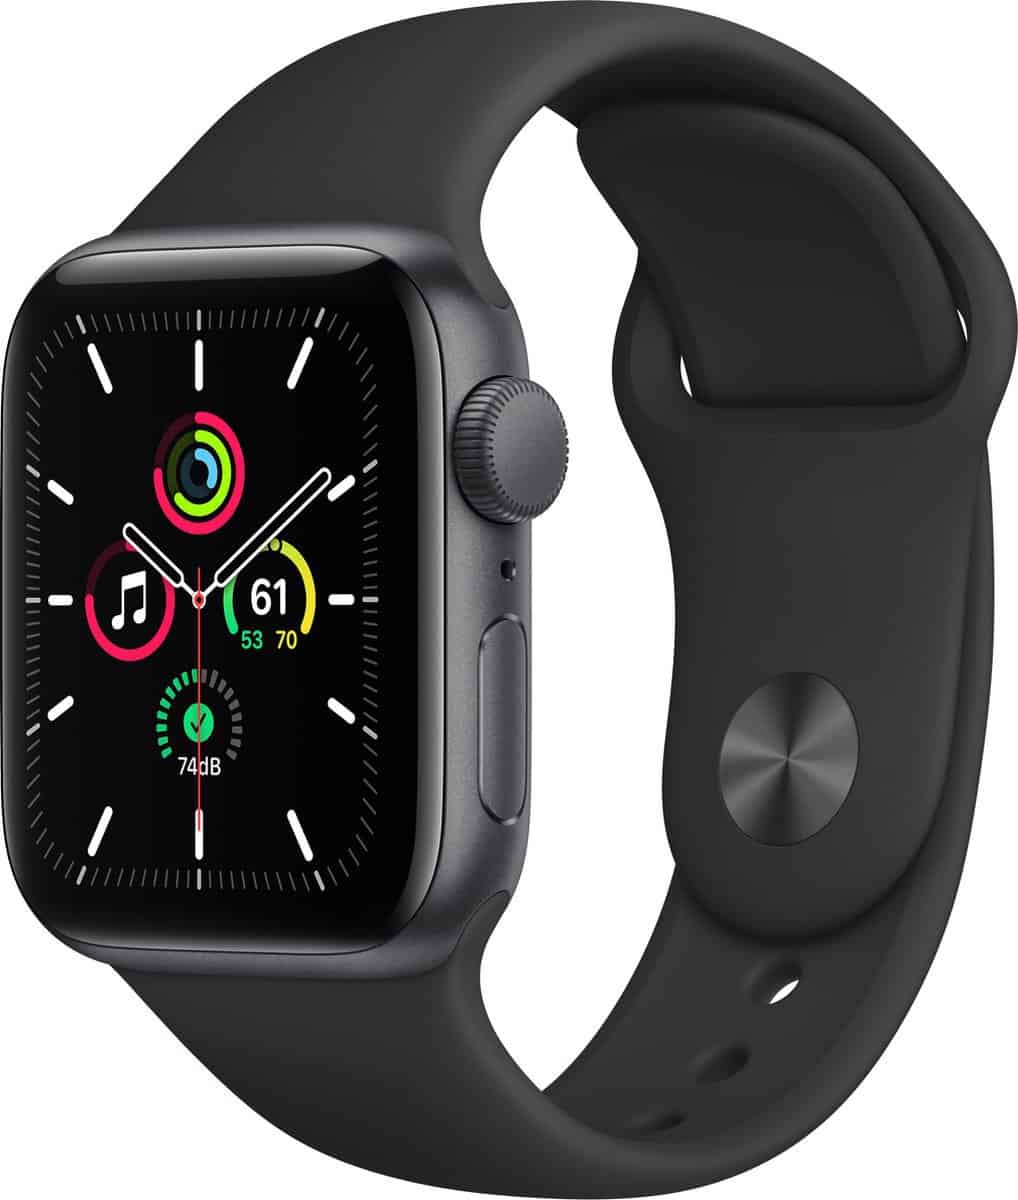 Best Apple Smartwatch for Kids: Apple Watch SE